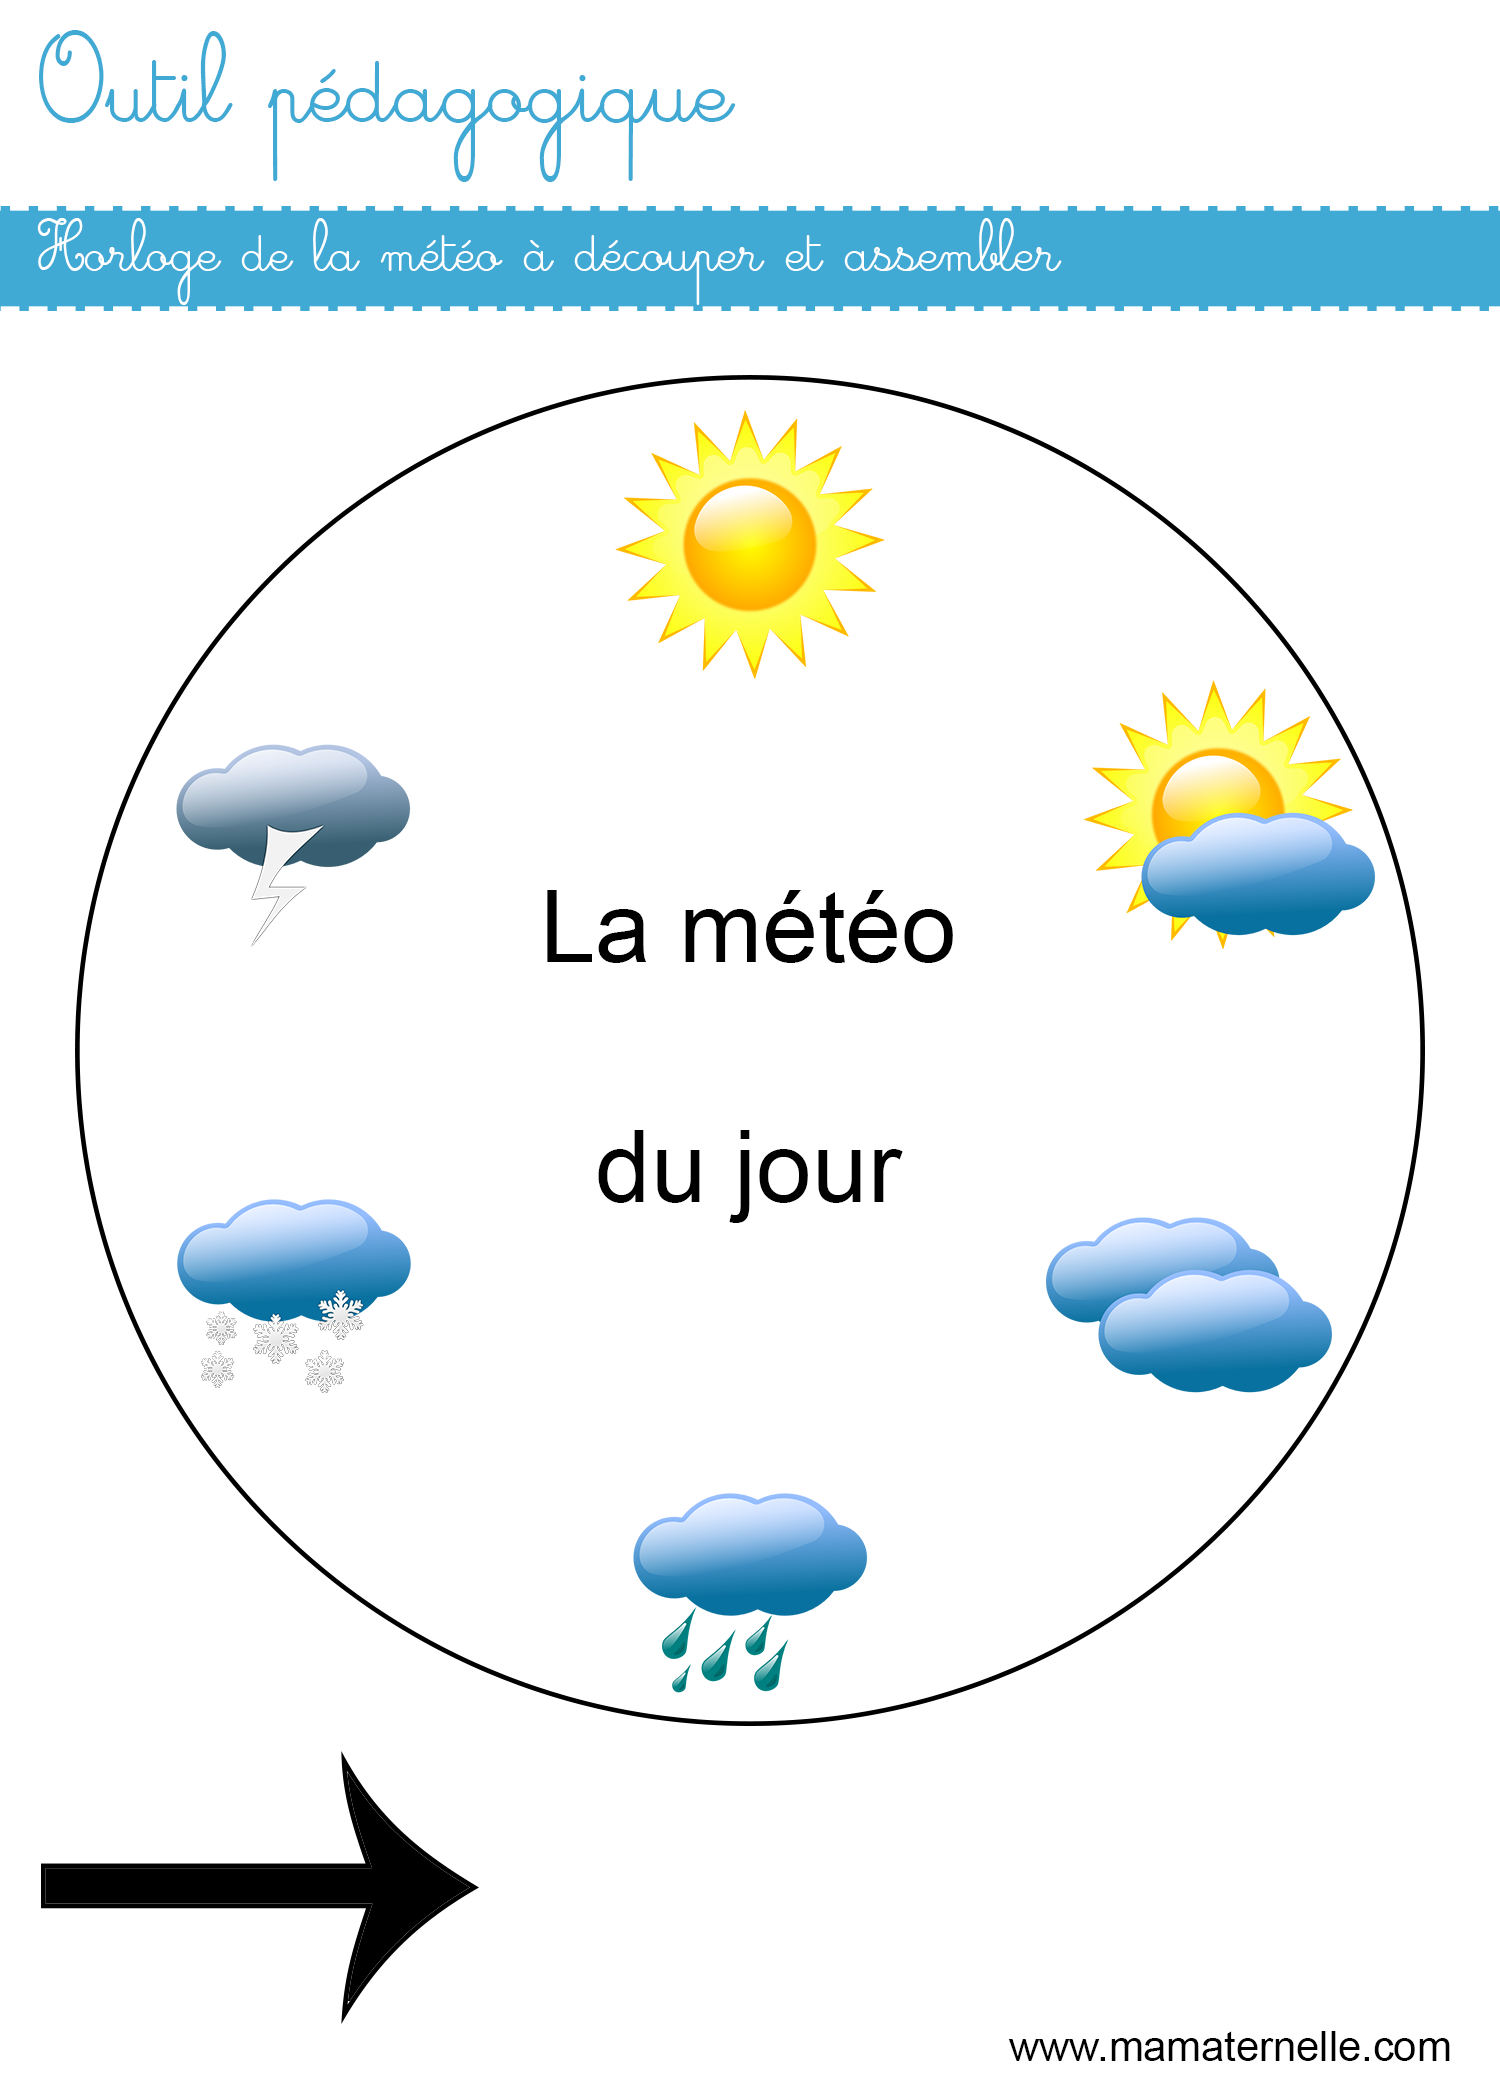 Outil pédagogique : horloge de la météo - Ma Maternelle